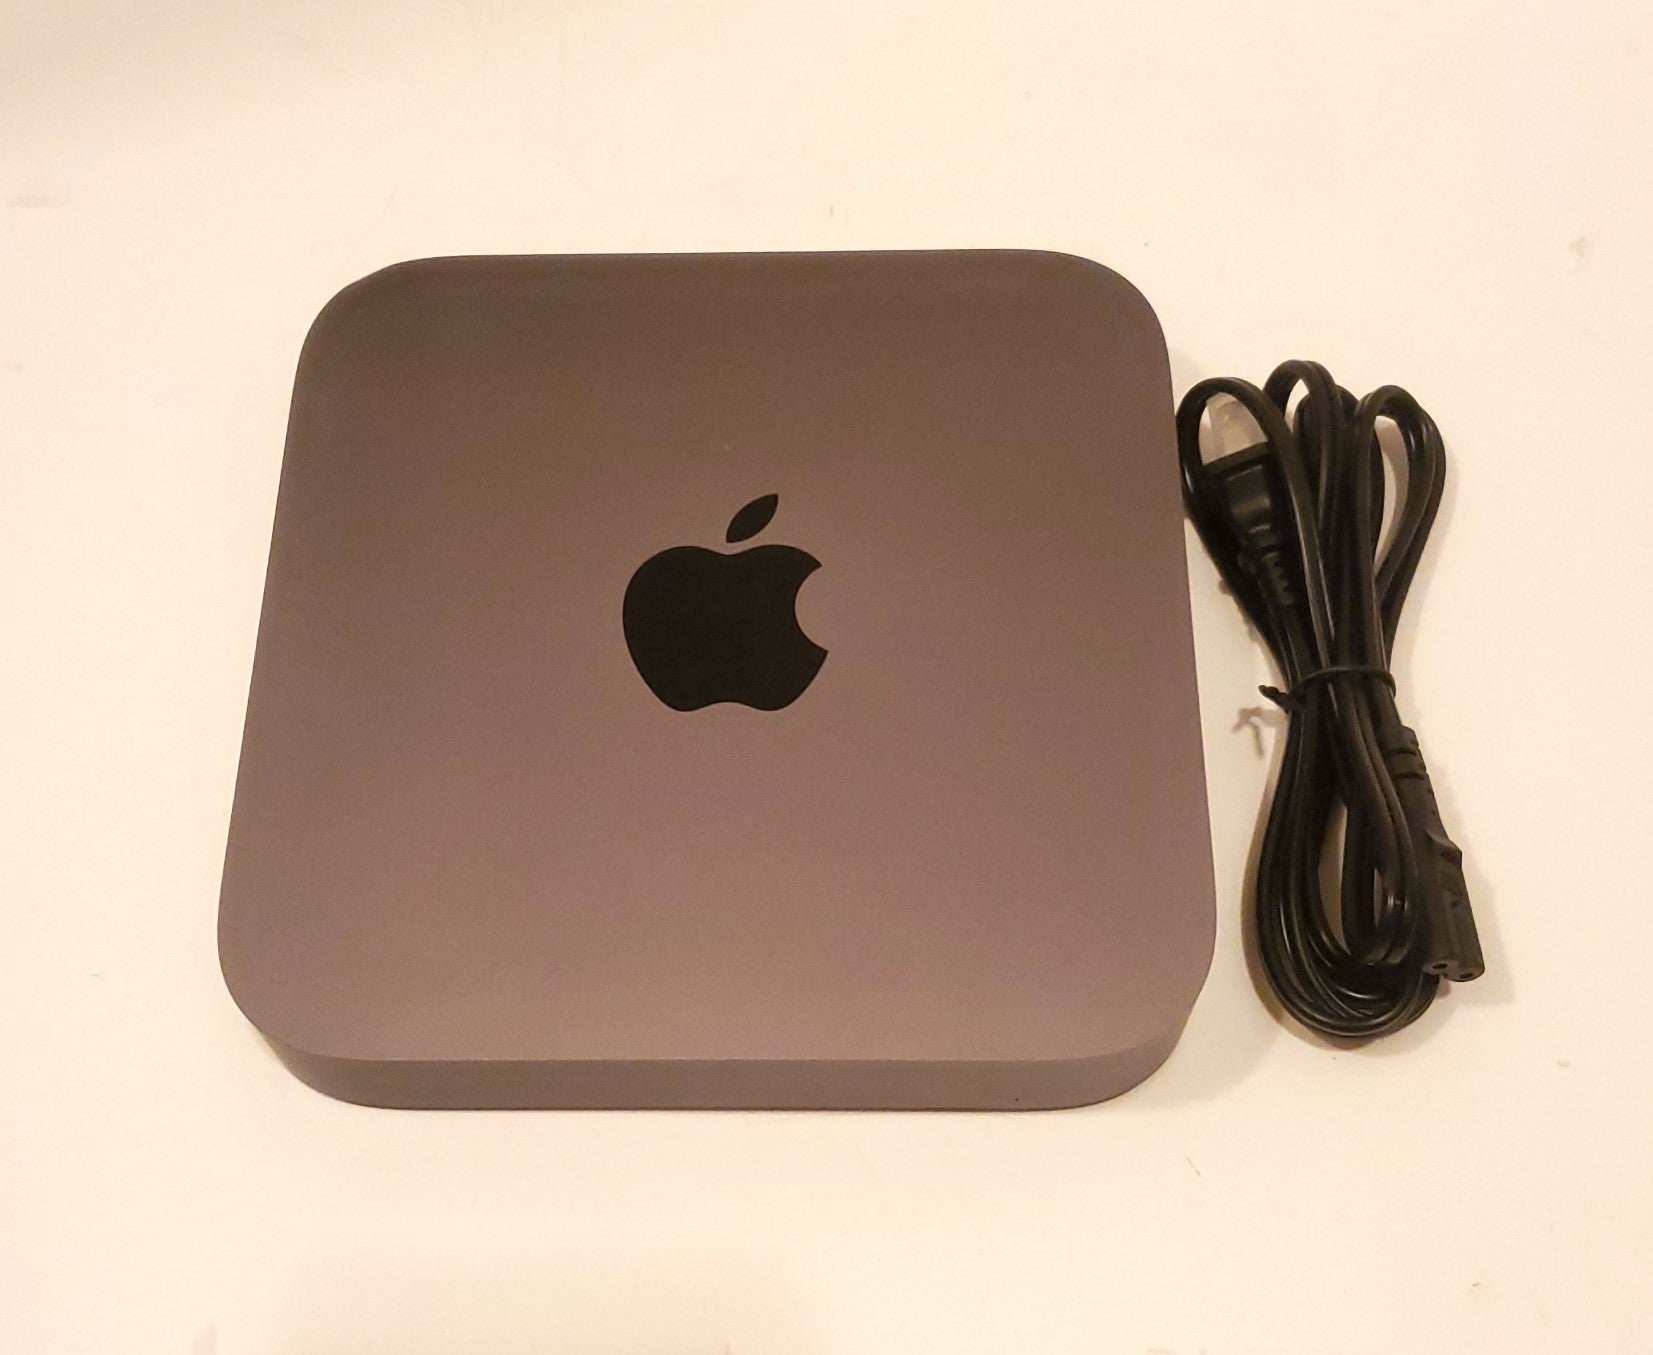 Apple Mac mini MRTT2LL/A - Intel i5 - Rekes Sales